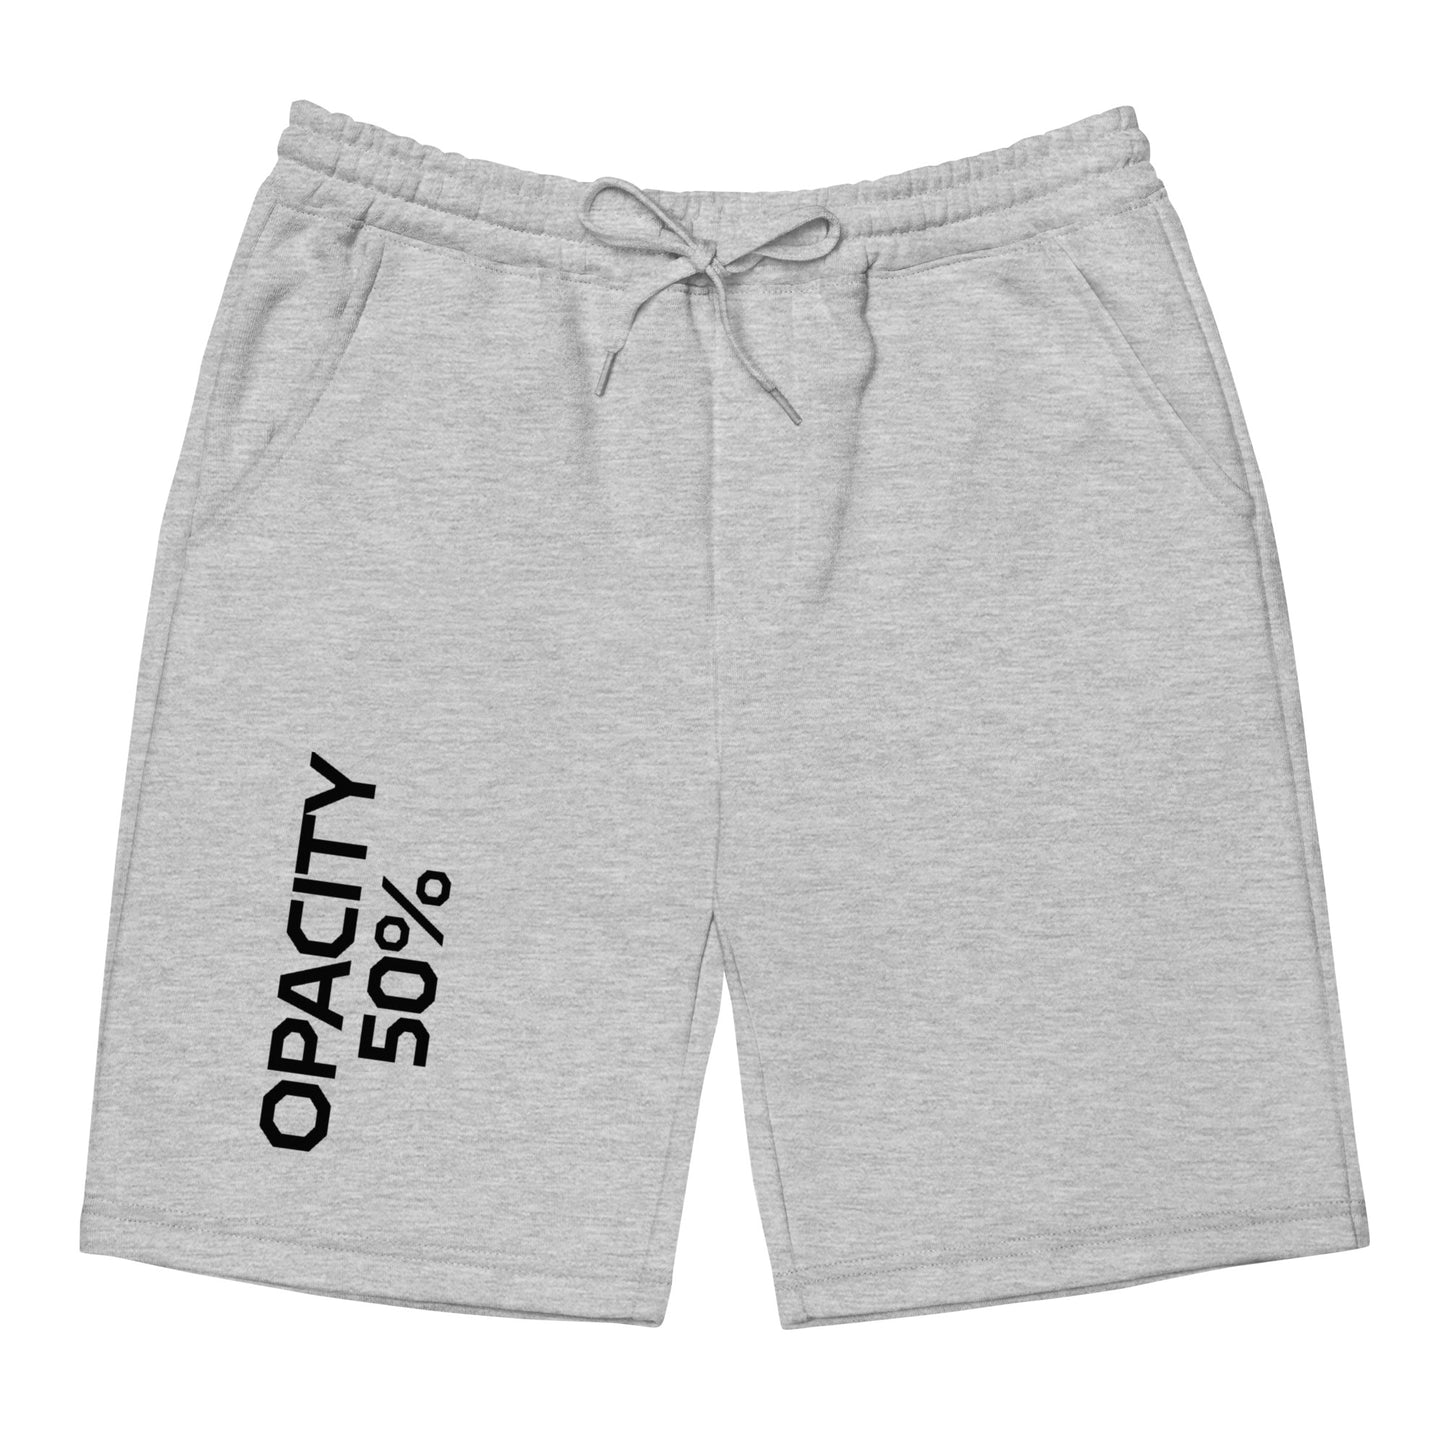 Opacity 50% Men's fleece shorts